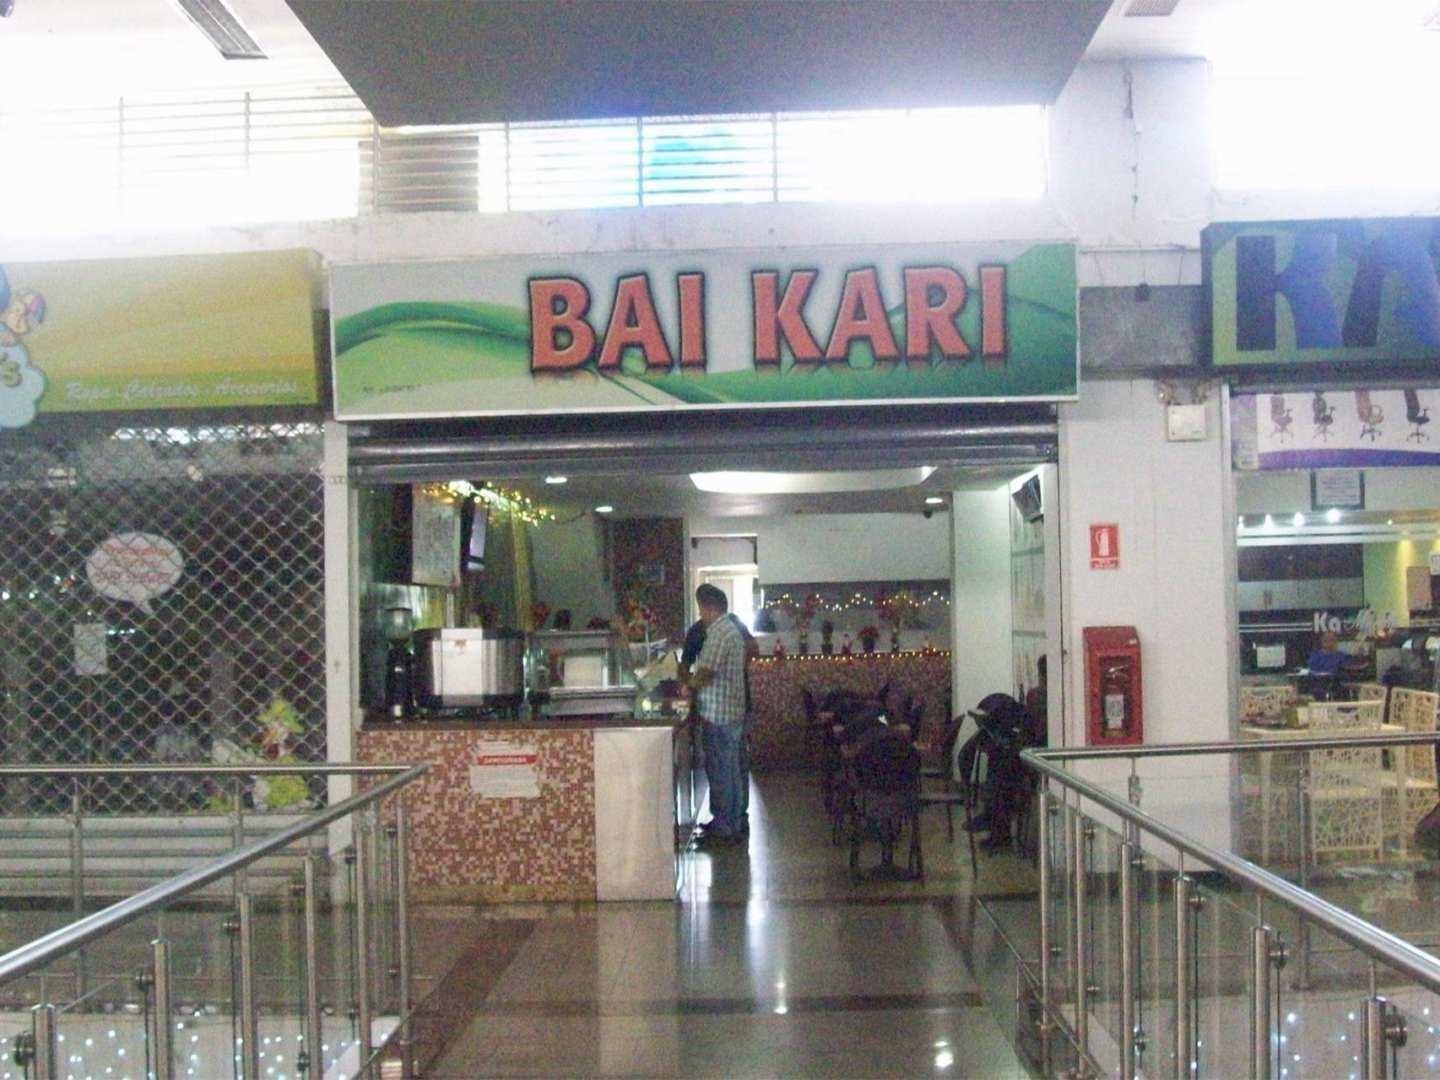 Bai Kari